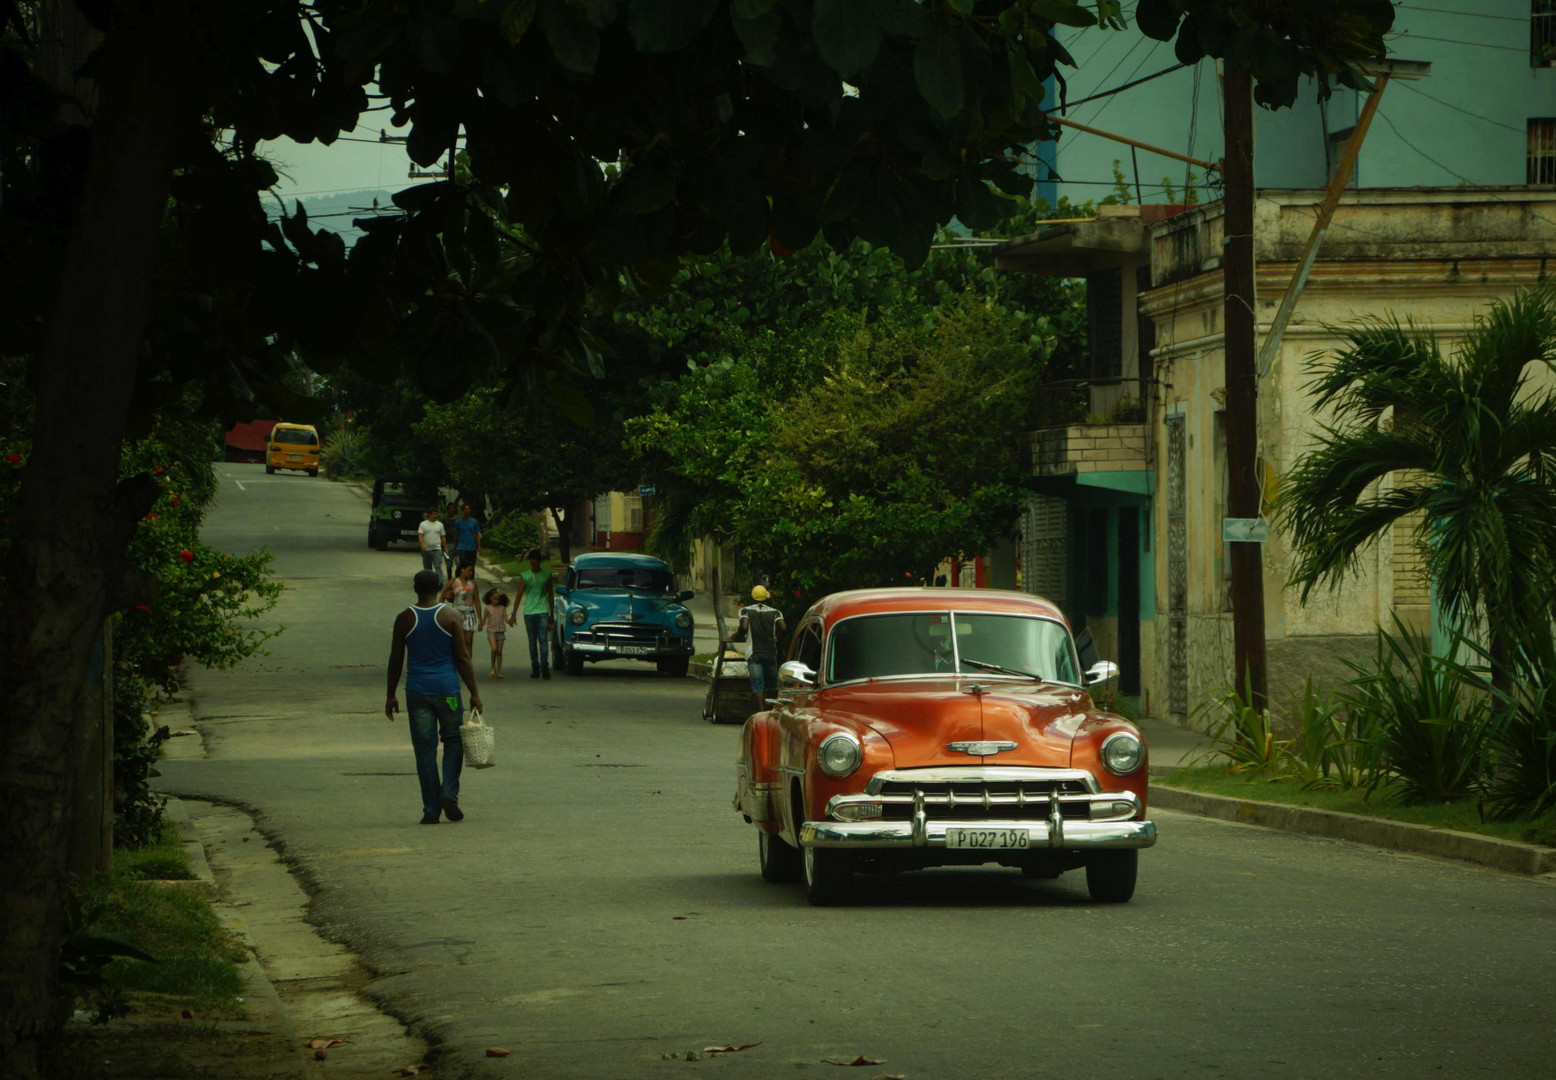 Santiago de Cuba: Street scene 02